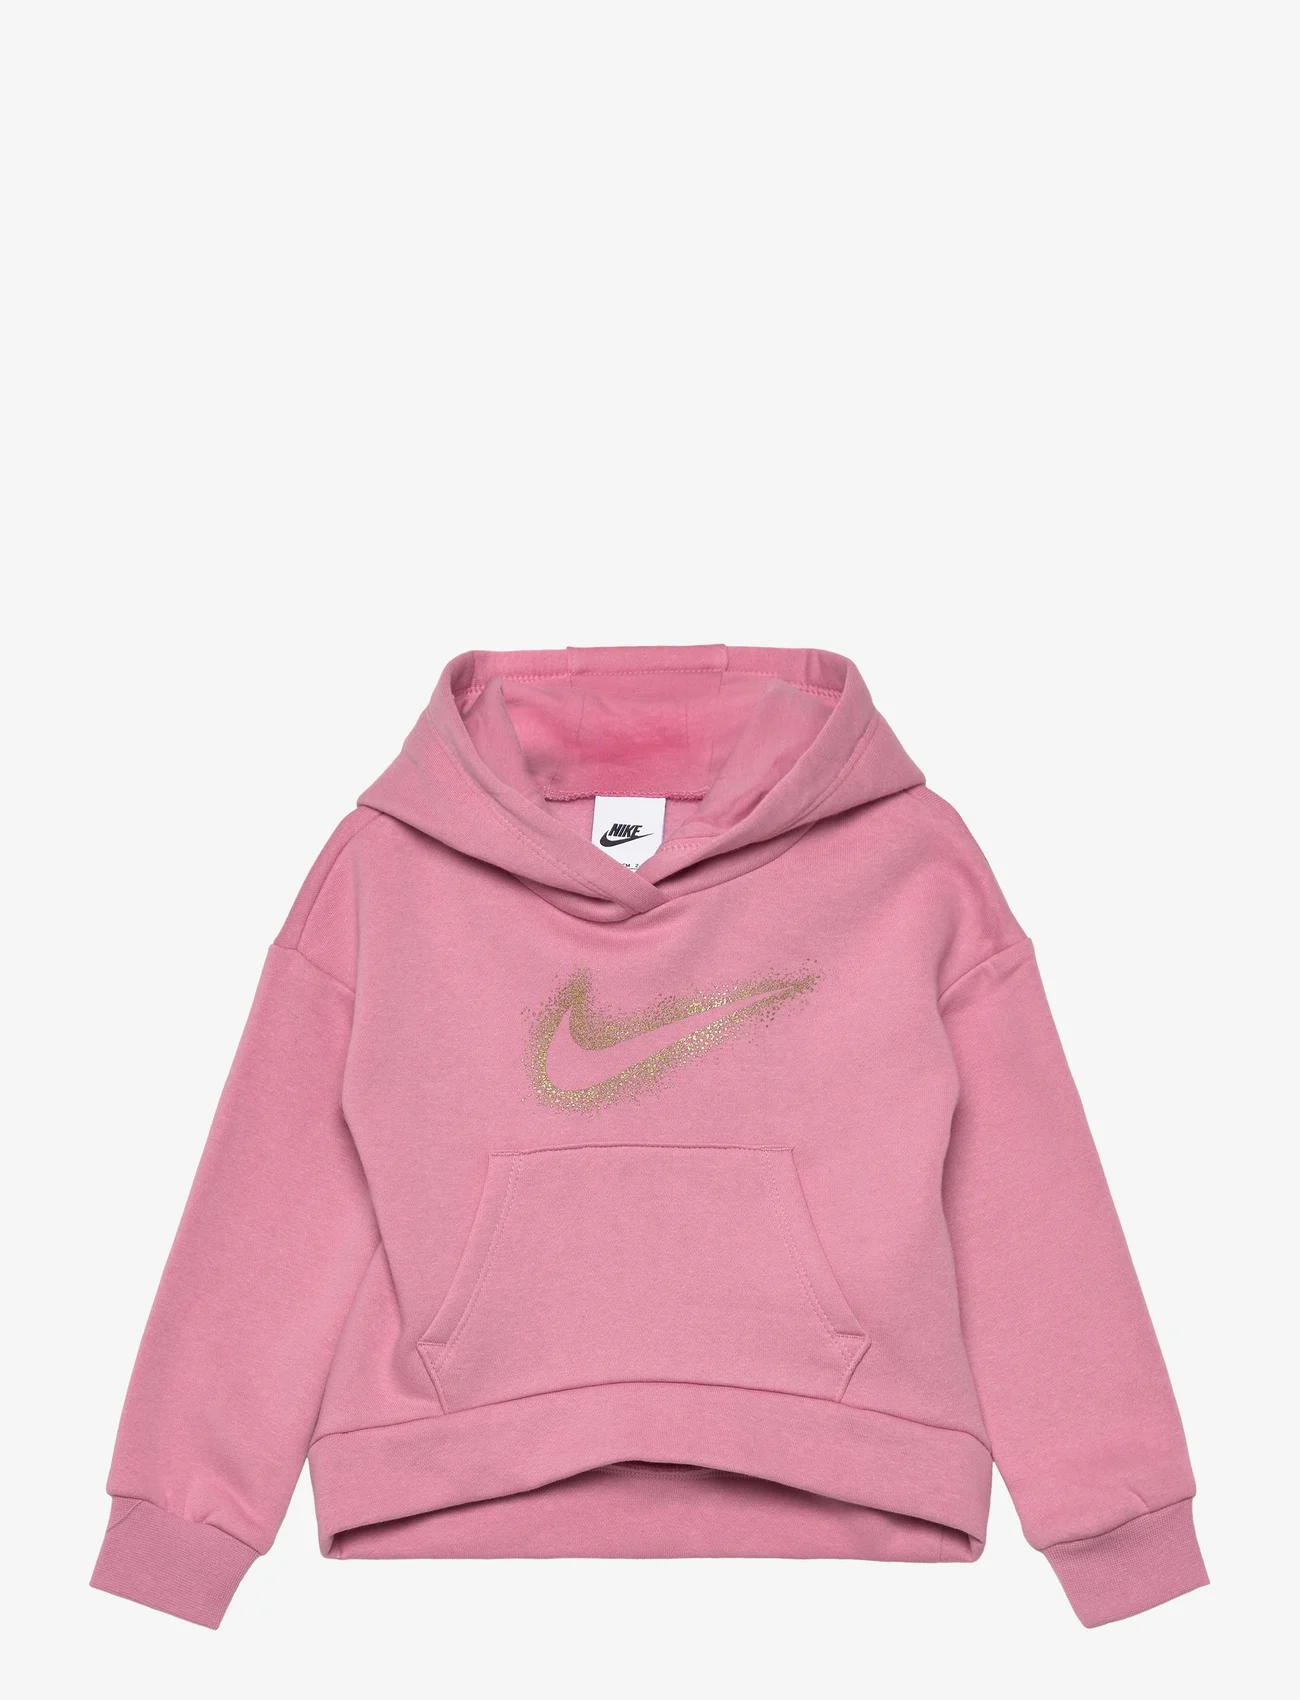 Nike - FLEECE HOODIE - kapuzenpullover - elemental pink - 0